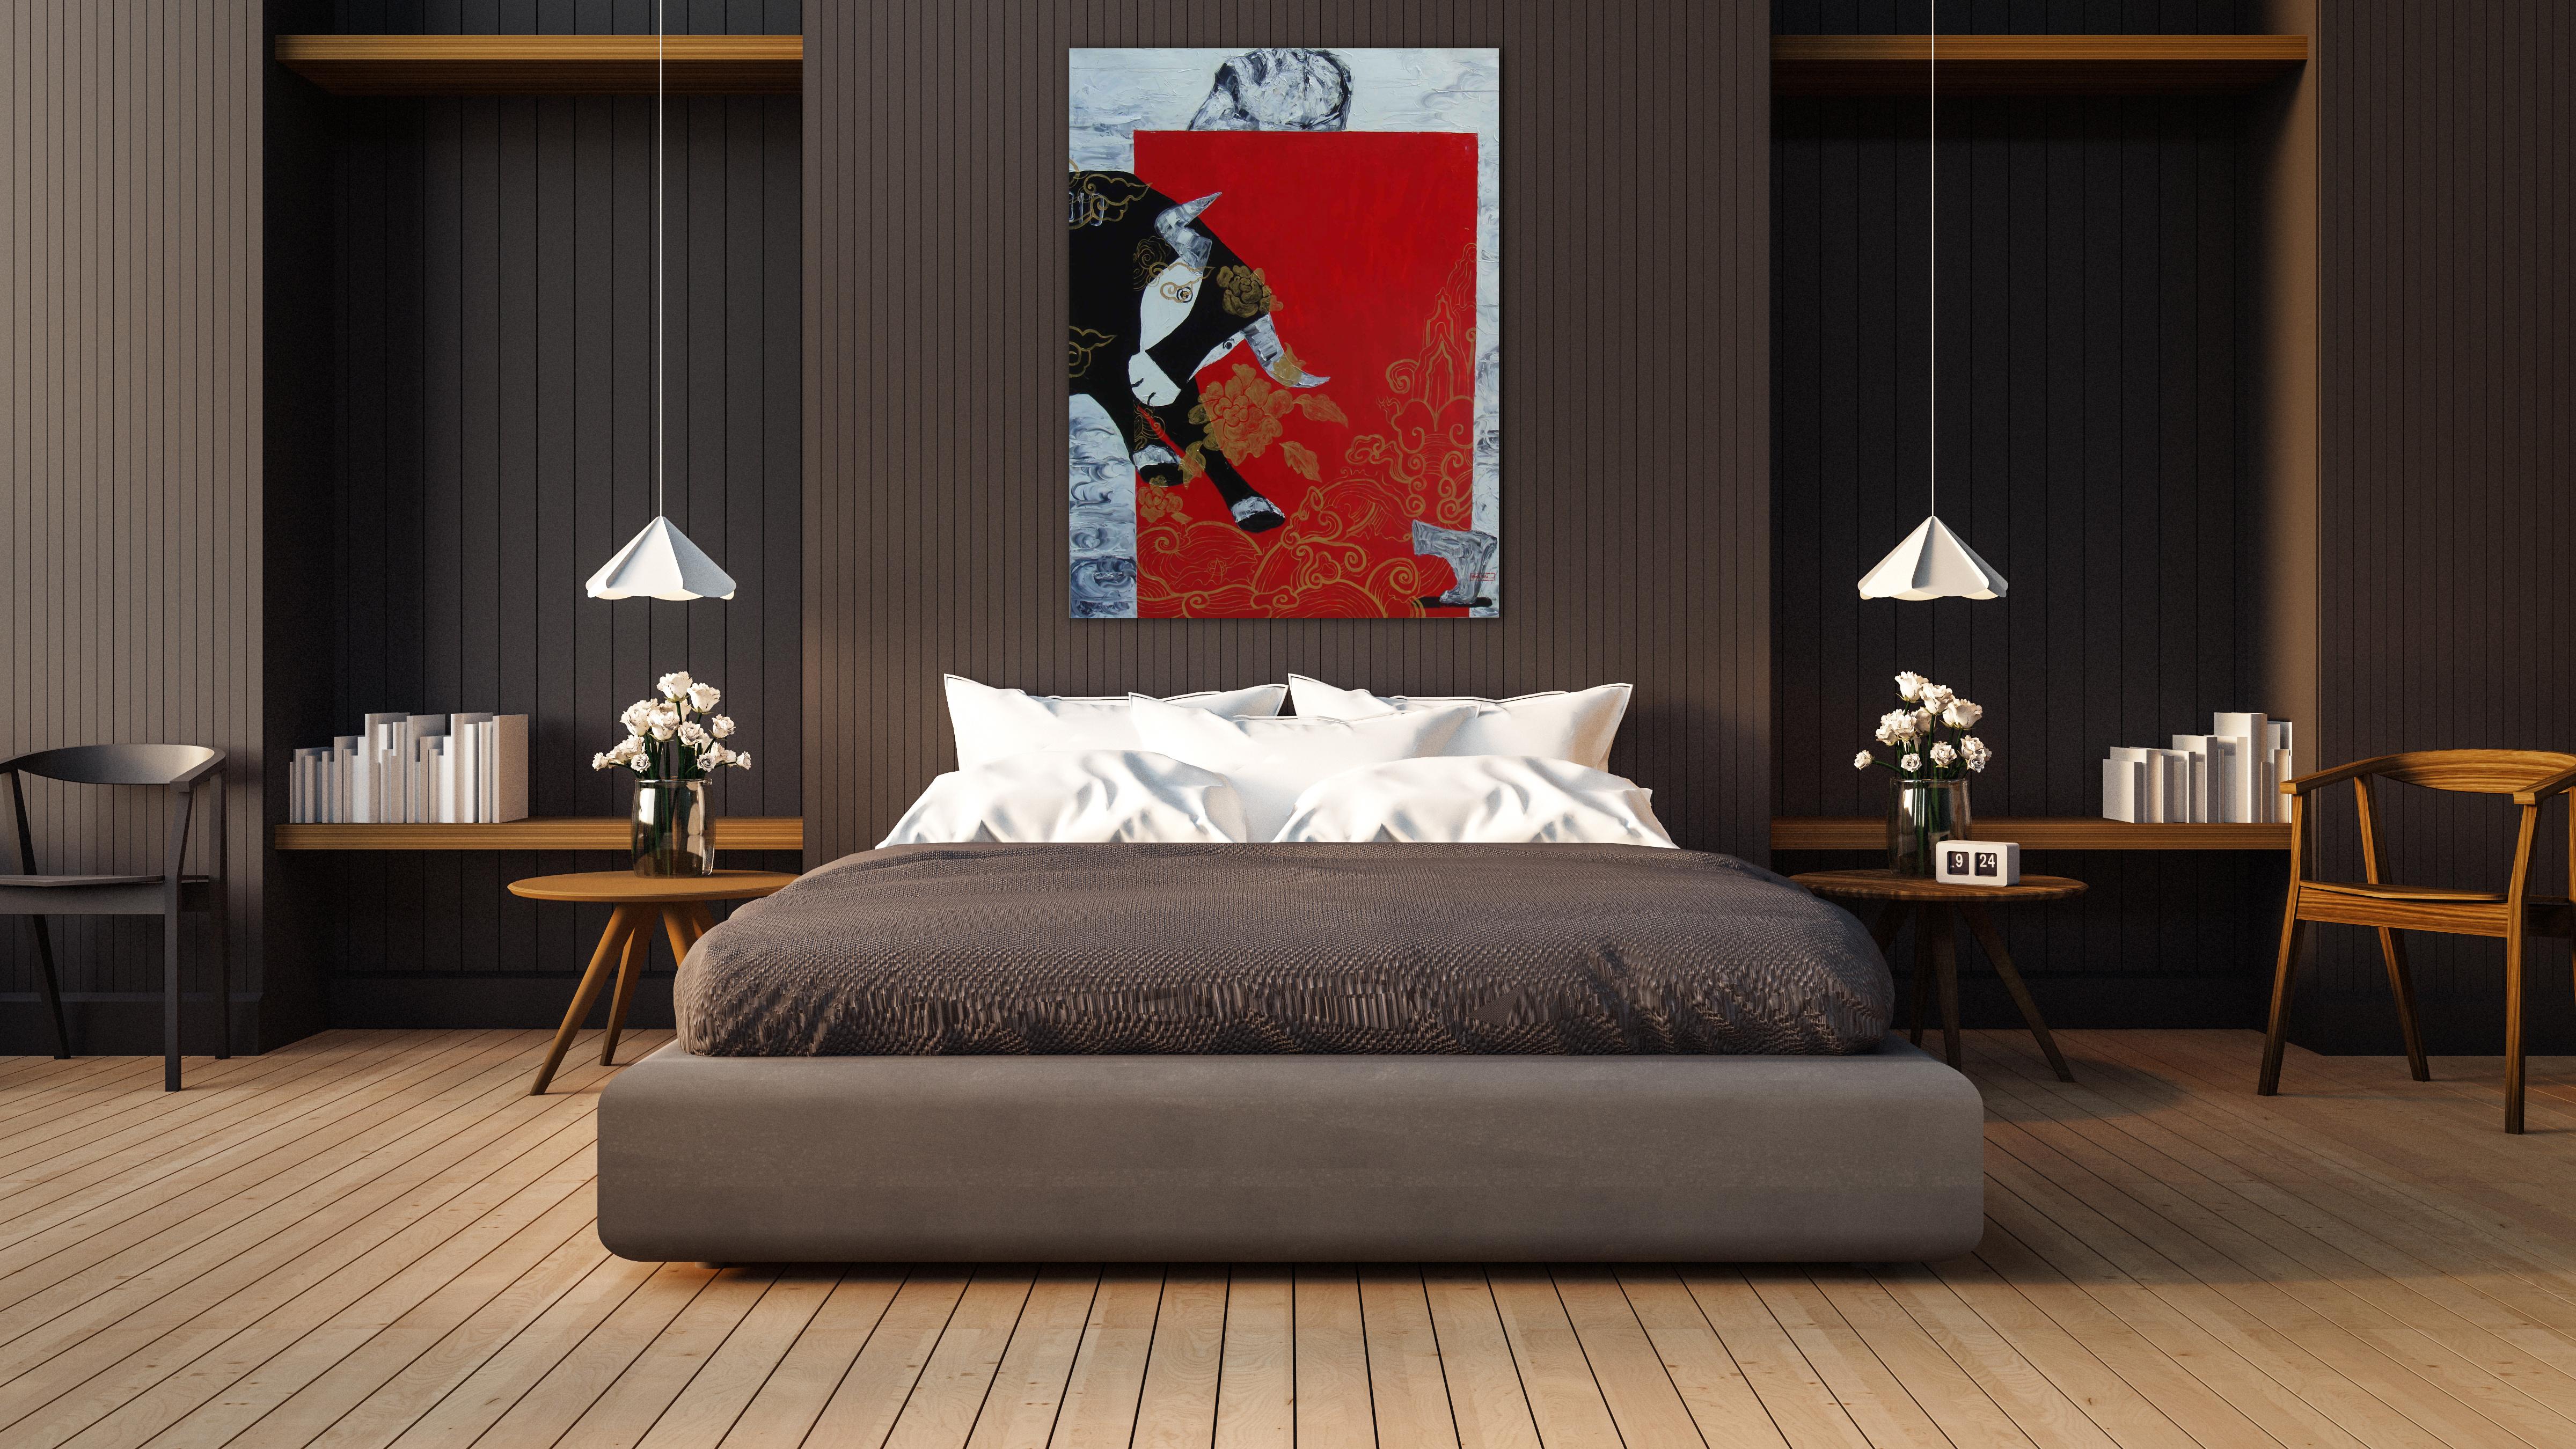 « My Pet Bull », huile sur toile d'un taureau noir avec rouge, noir, or, bleu et gris - Contemporain Painting par Nguyen Dinh Vu